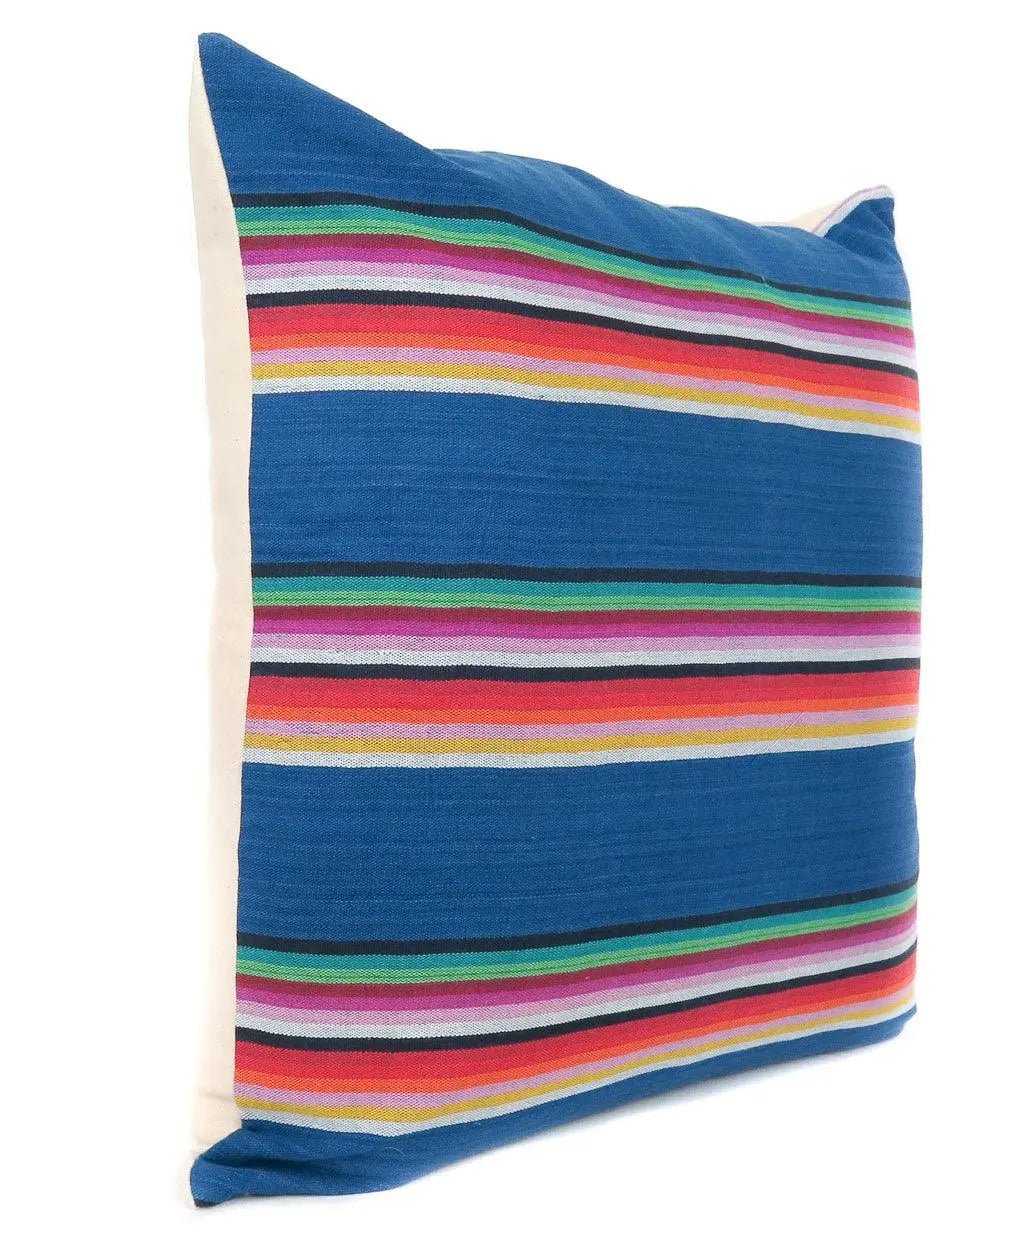 Blue Striped Throw Pillows - H U N T E D F O X